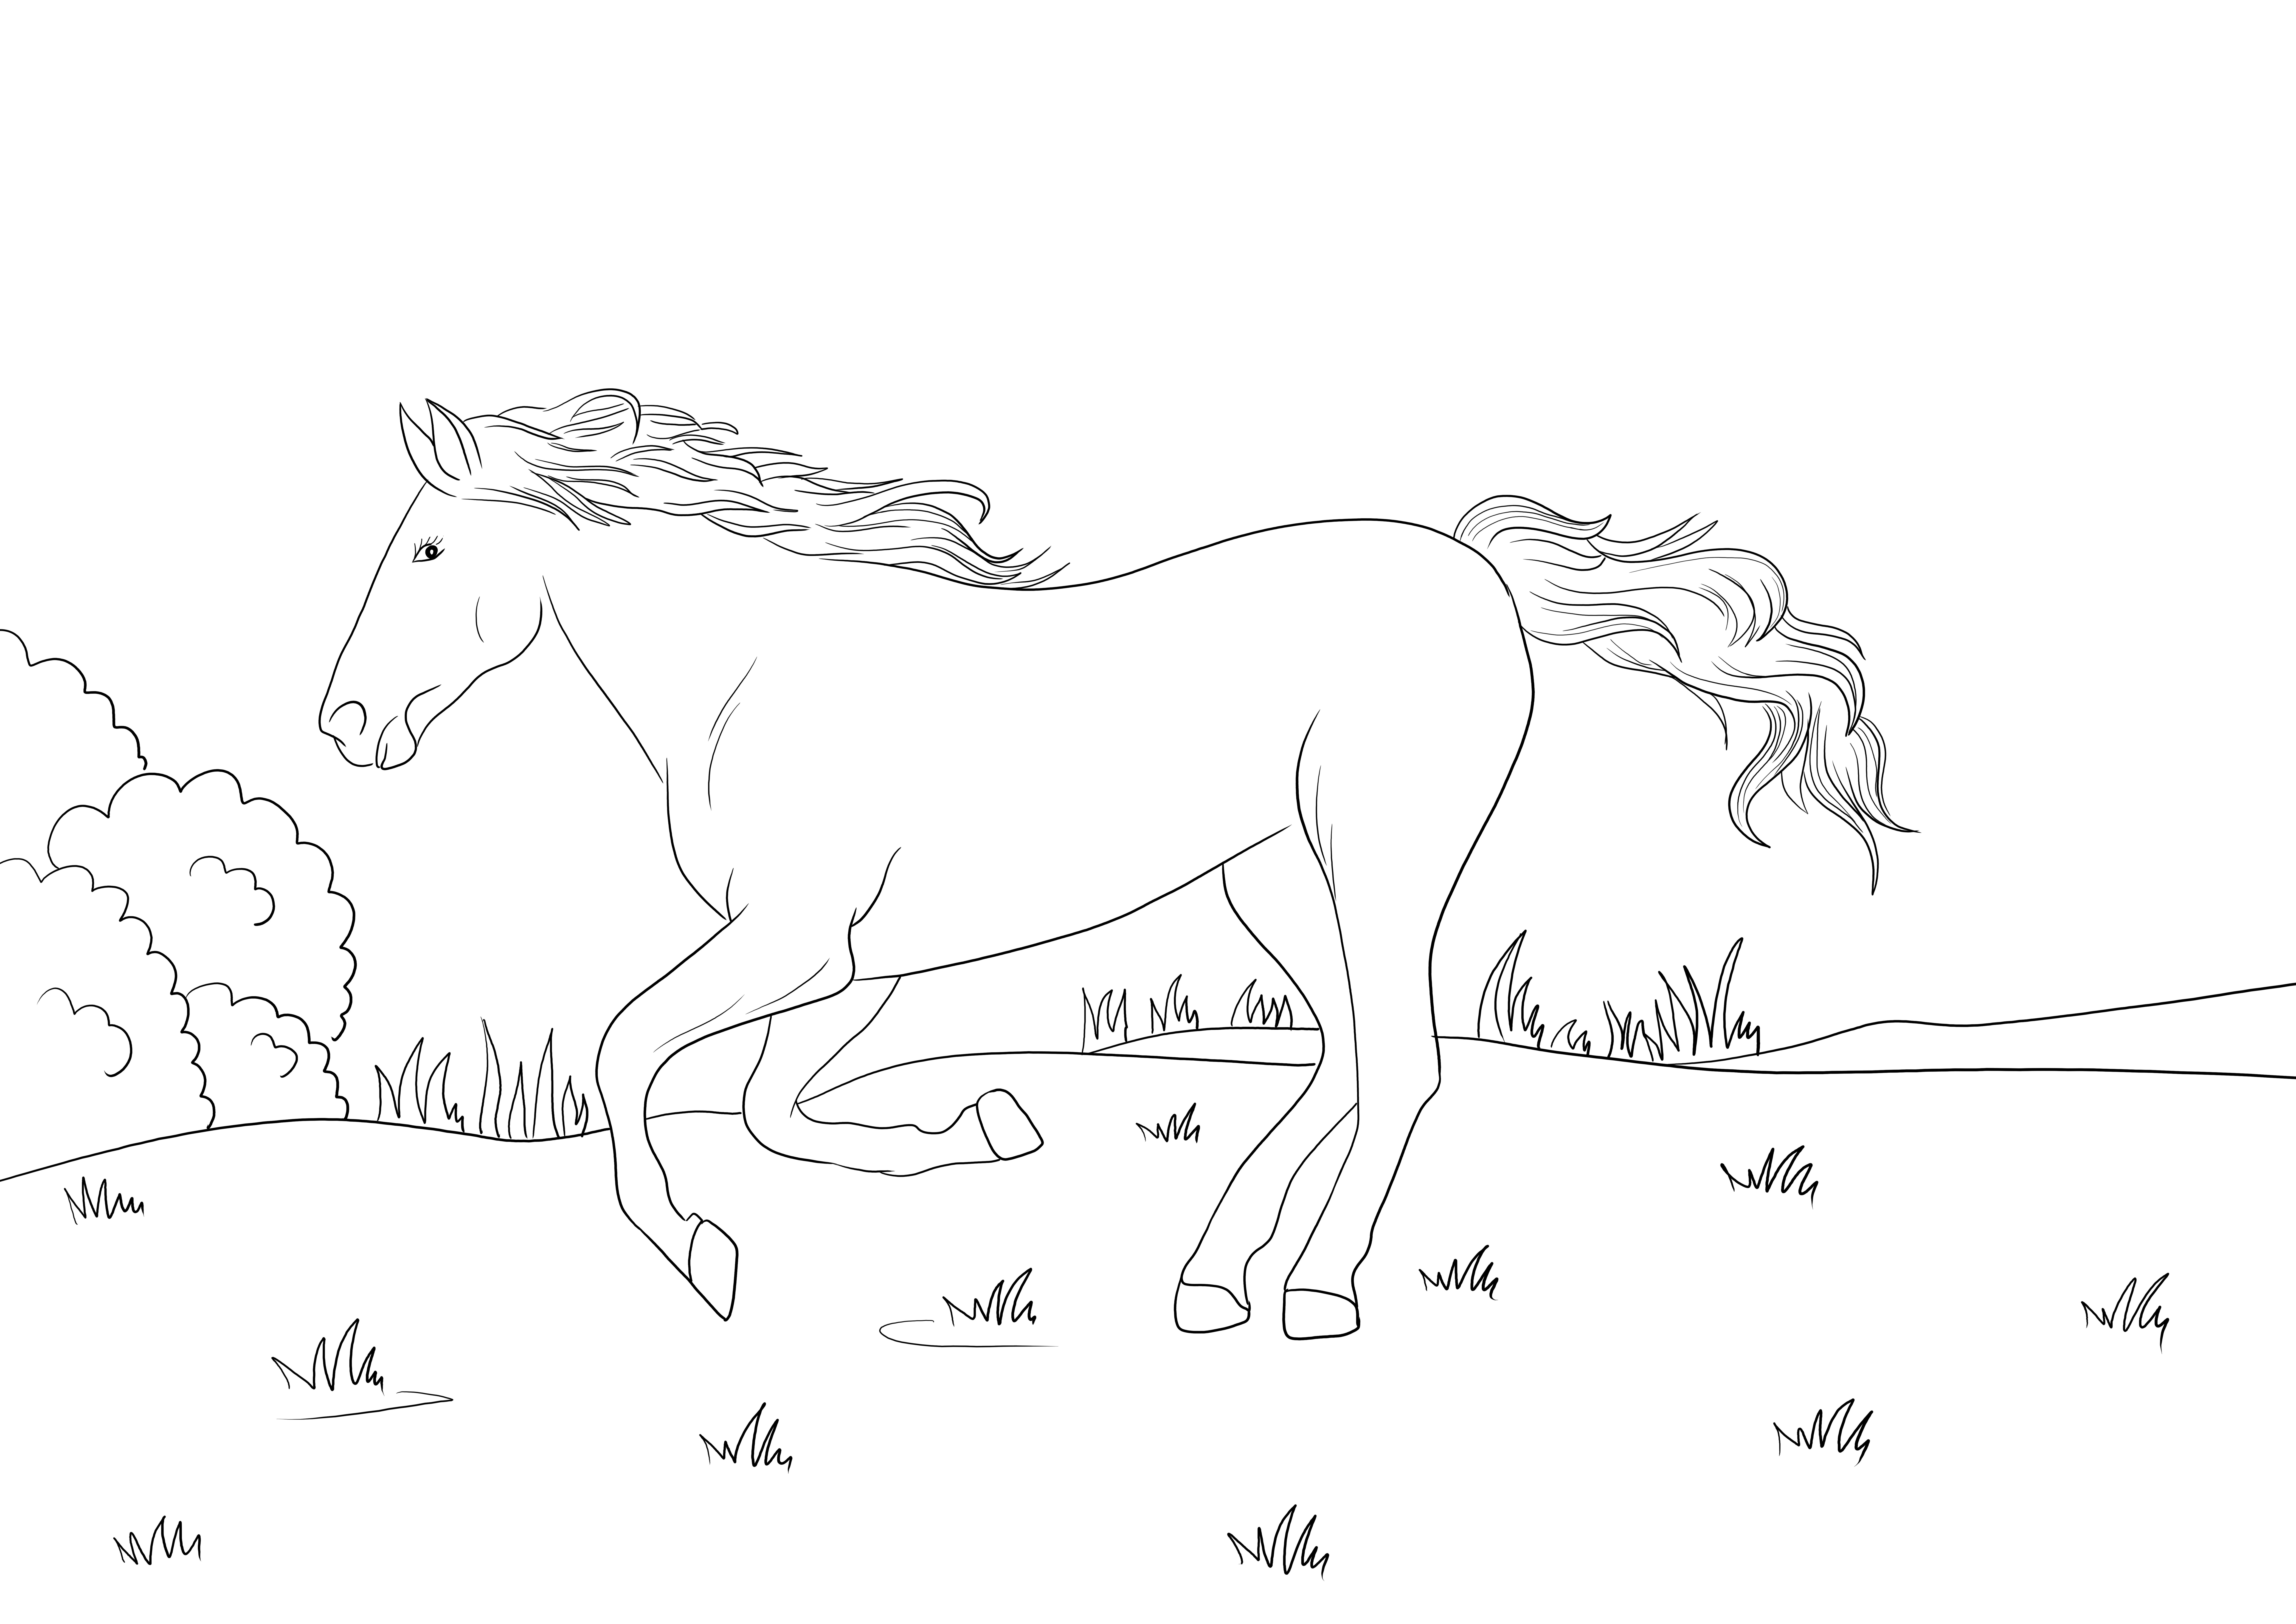 Mustang cavallo nitrito stampa o download gratuiti per i bambini da colorare